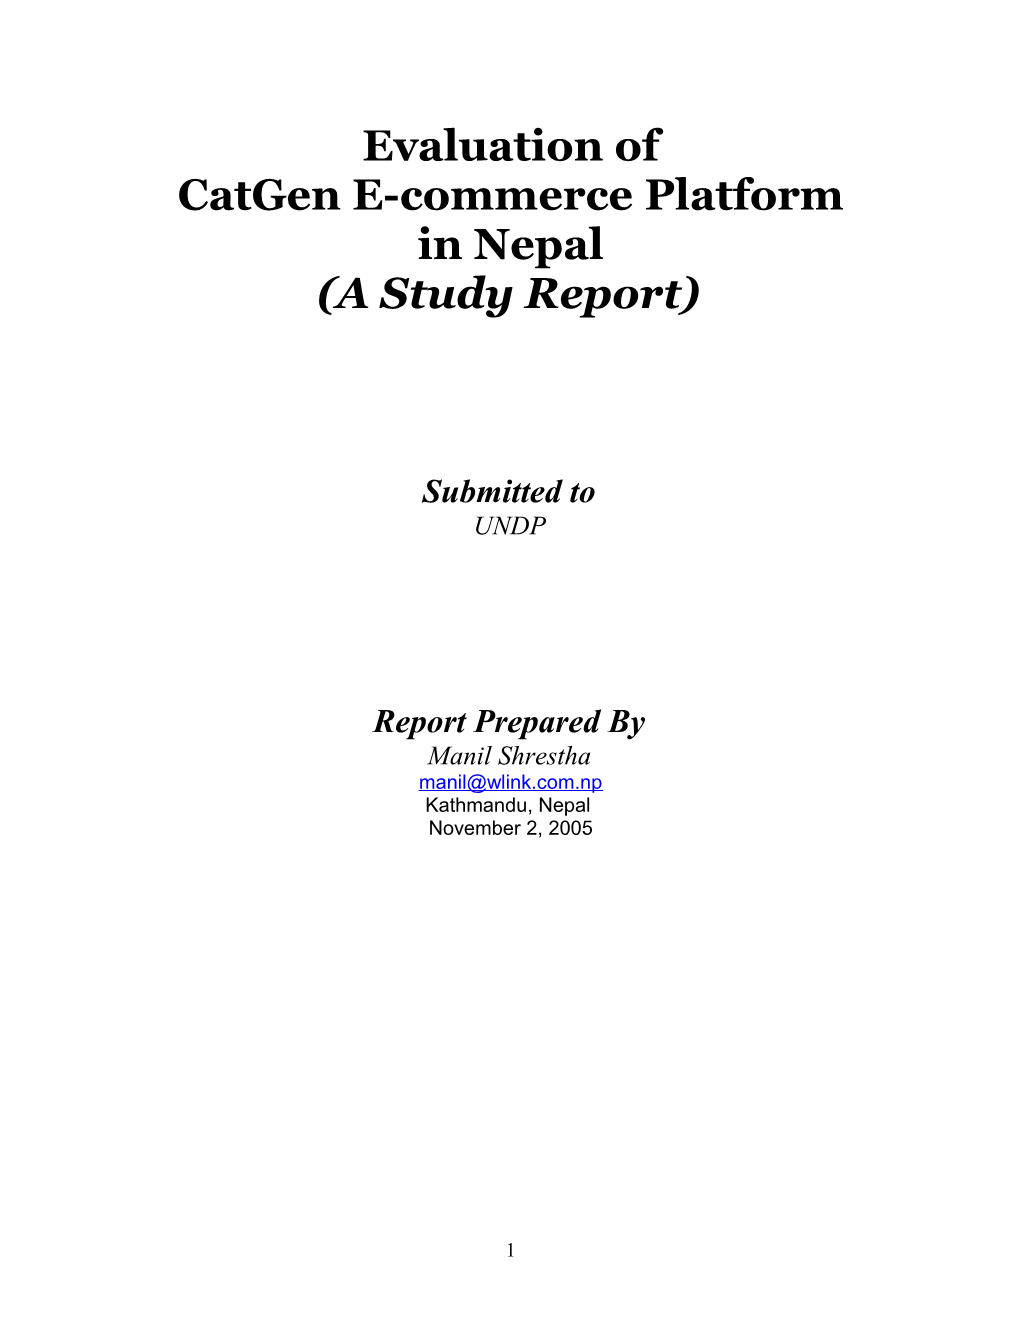 Catgen E-Commerceplatform in Nepal